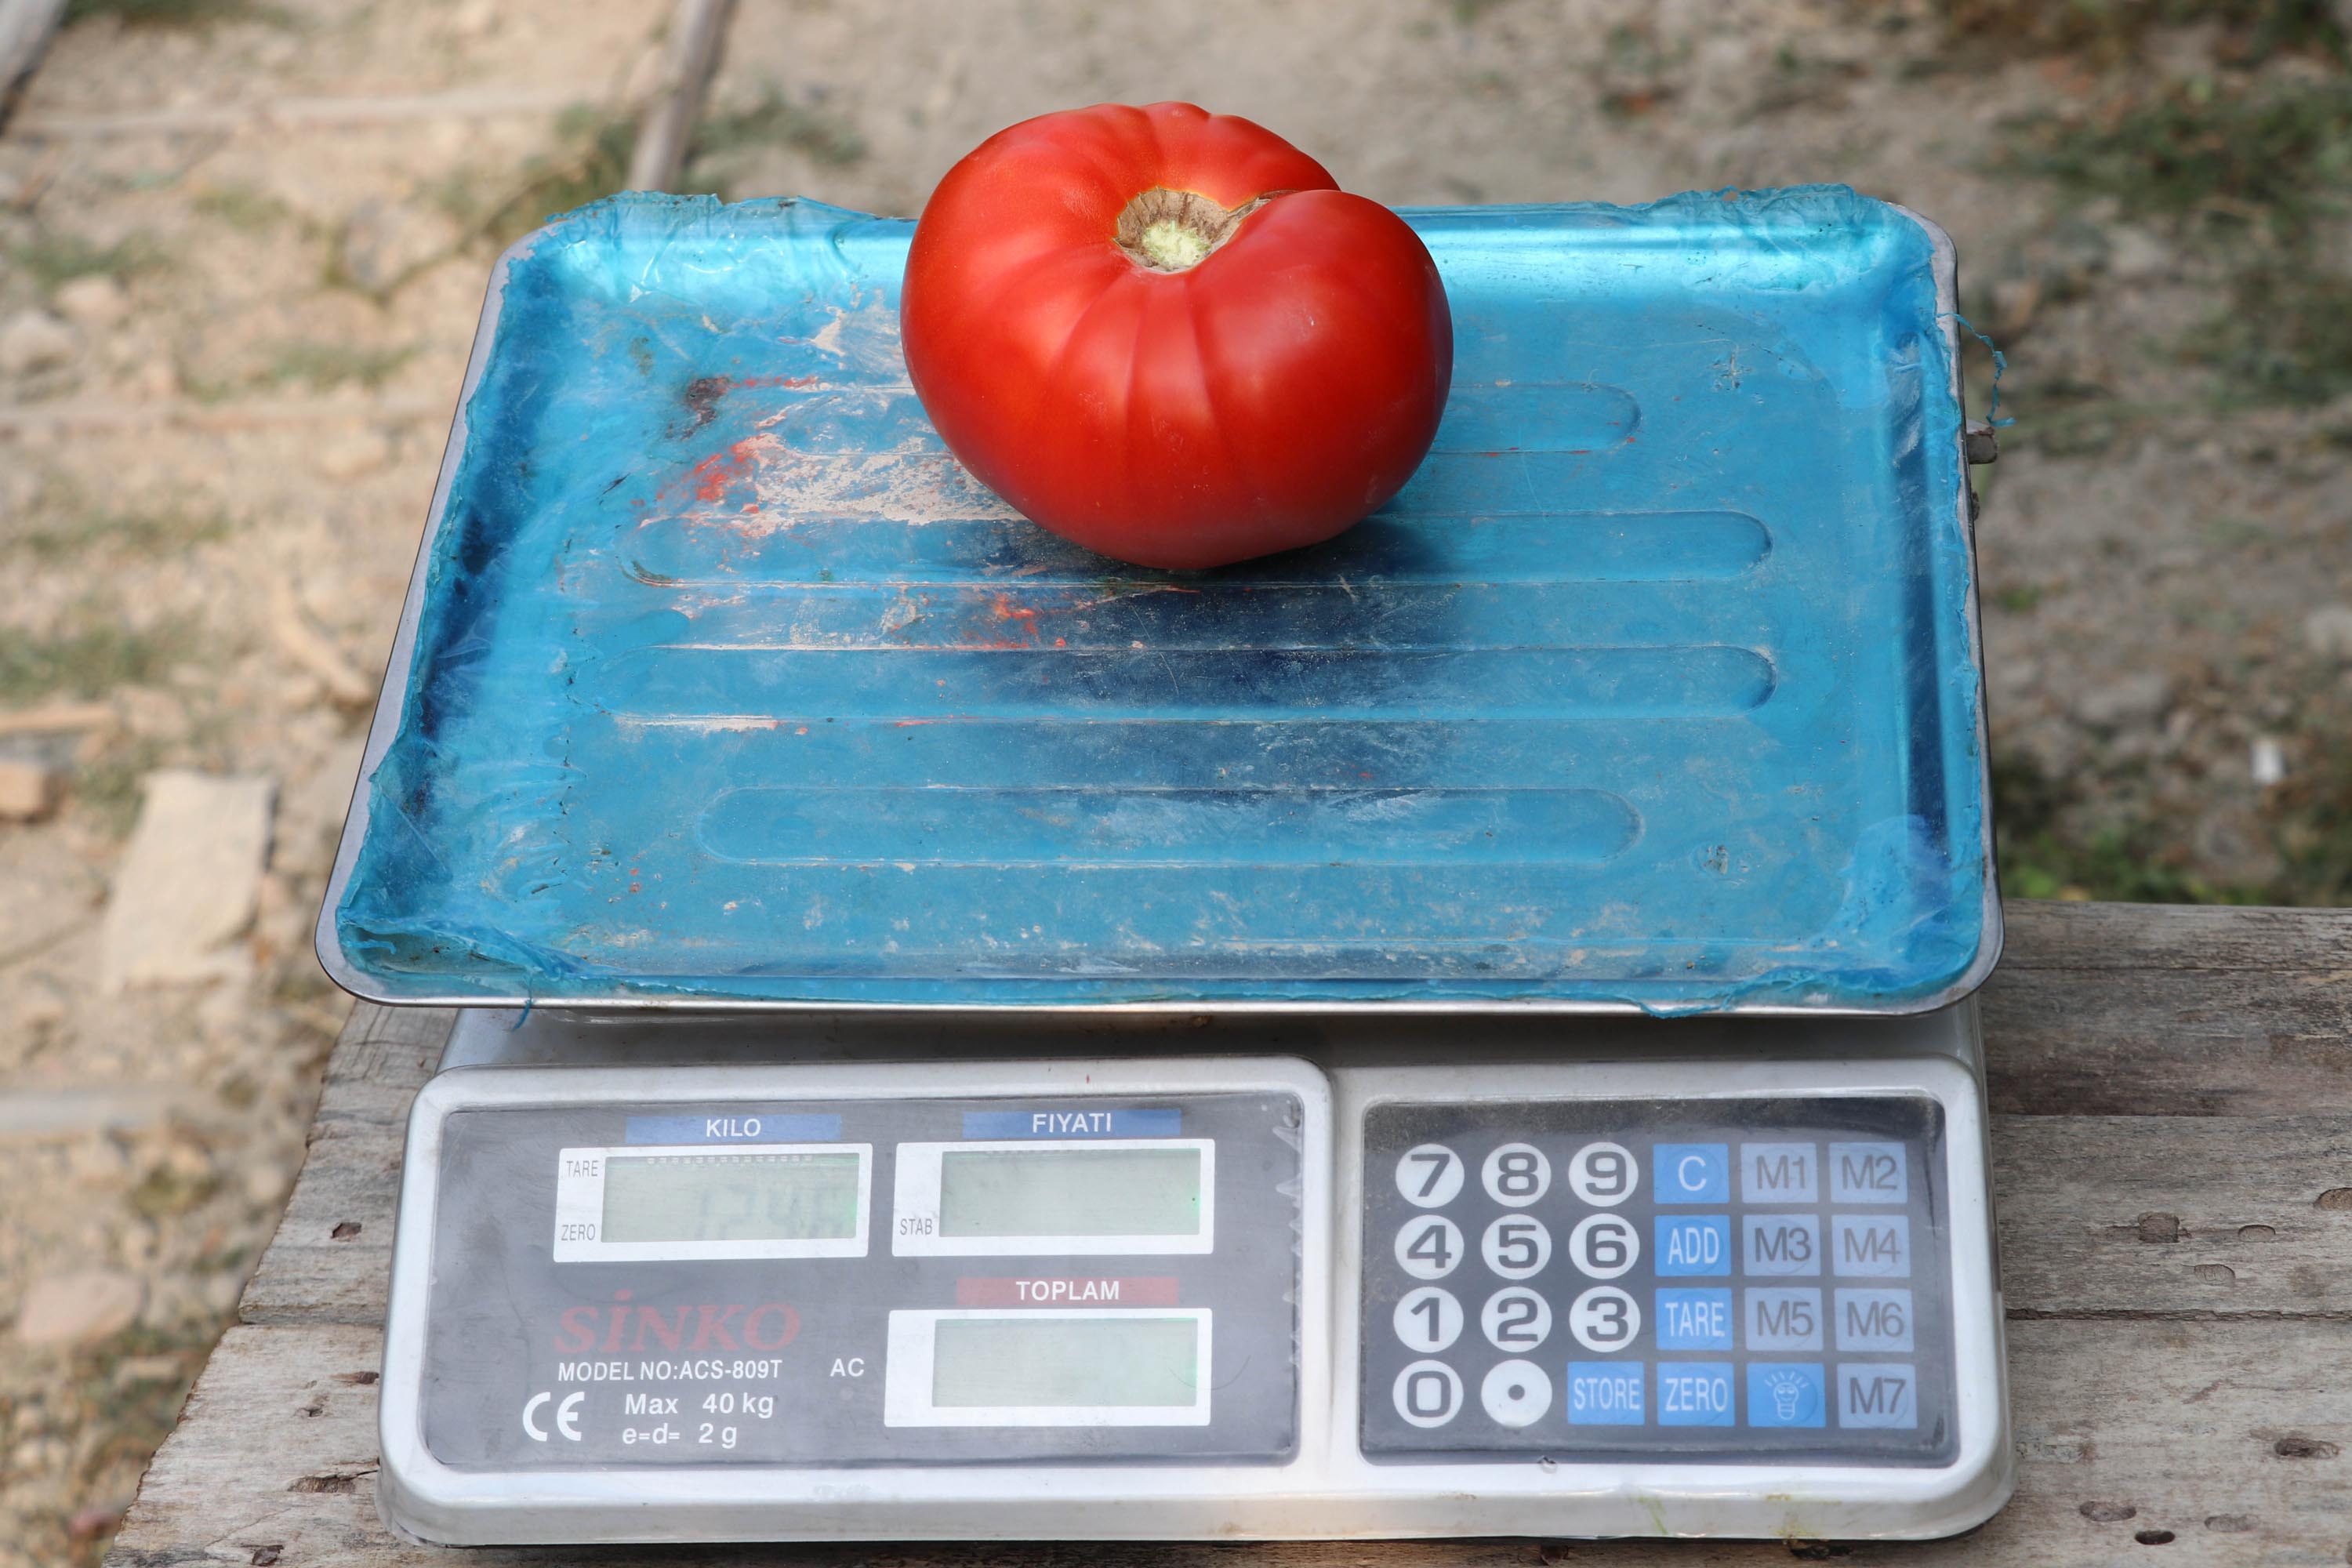 bombus-arilari-kullanilarak-yetistirilen-domateslerin-tanesi-1-kilo-geliyor-4707-dhaphoto2.jpg